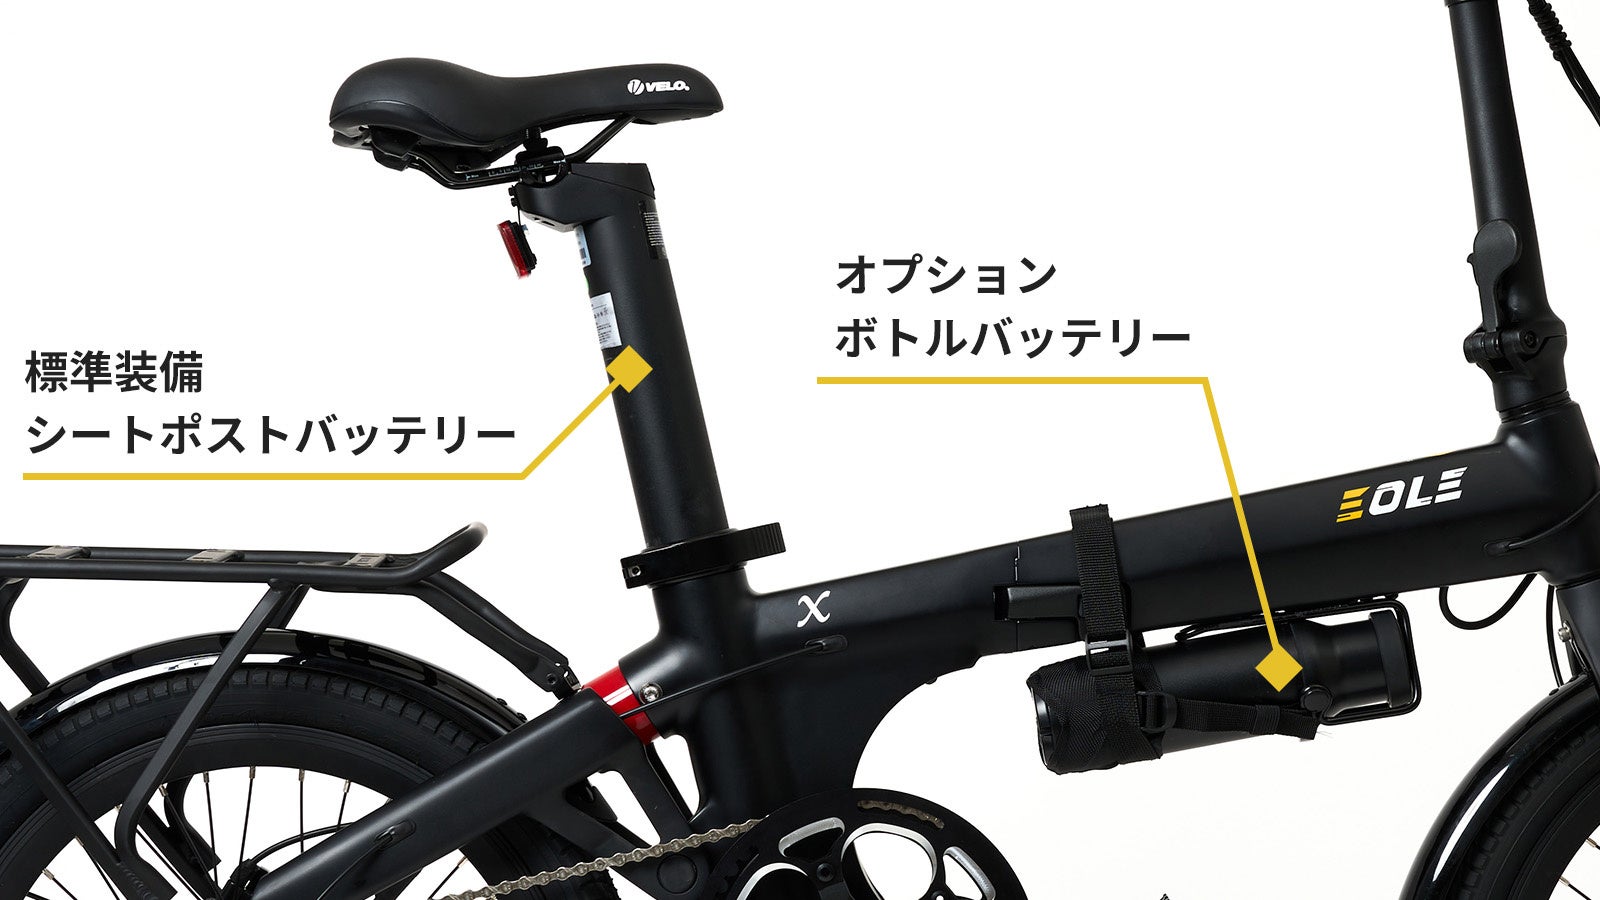 今ヨーロッパで話題の美しいデザインと高性能を兼ね備えた、近未来型折り畳み電動自転車！「Morfuns EOLE X」が応援購入サイトMakuakeにて日本初登場のサブ画像6